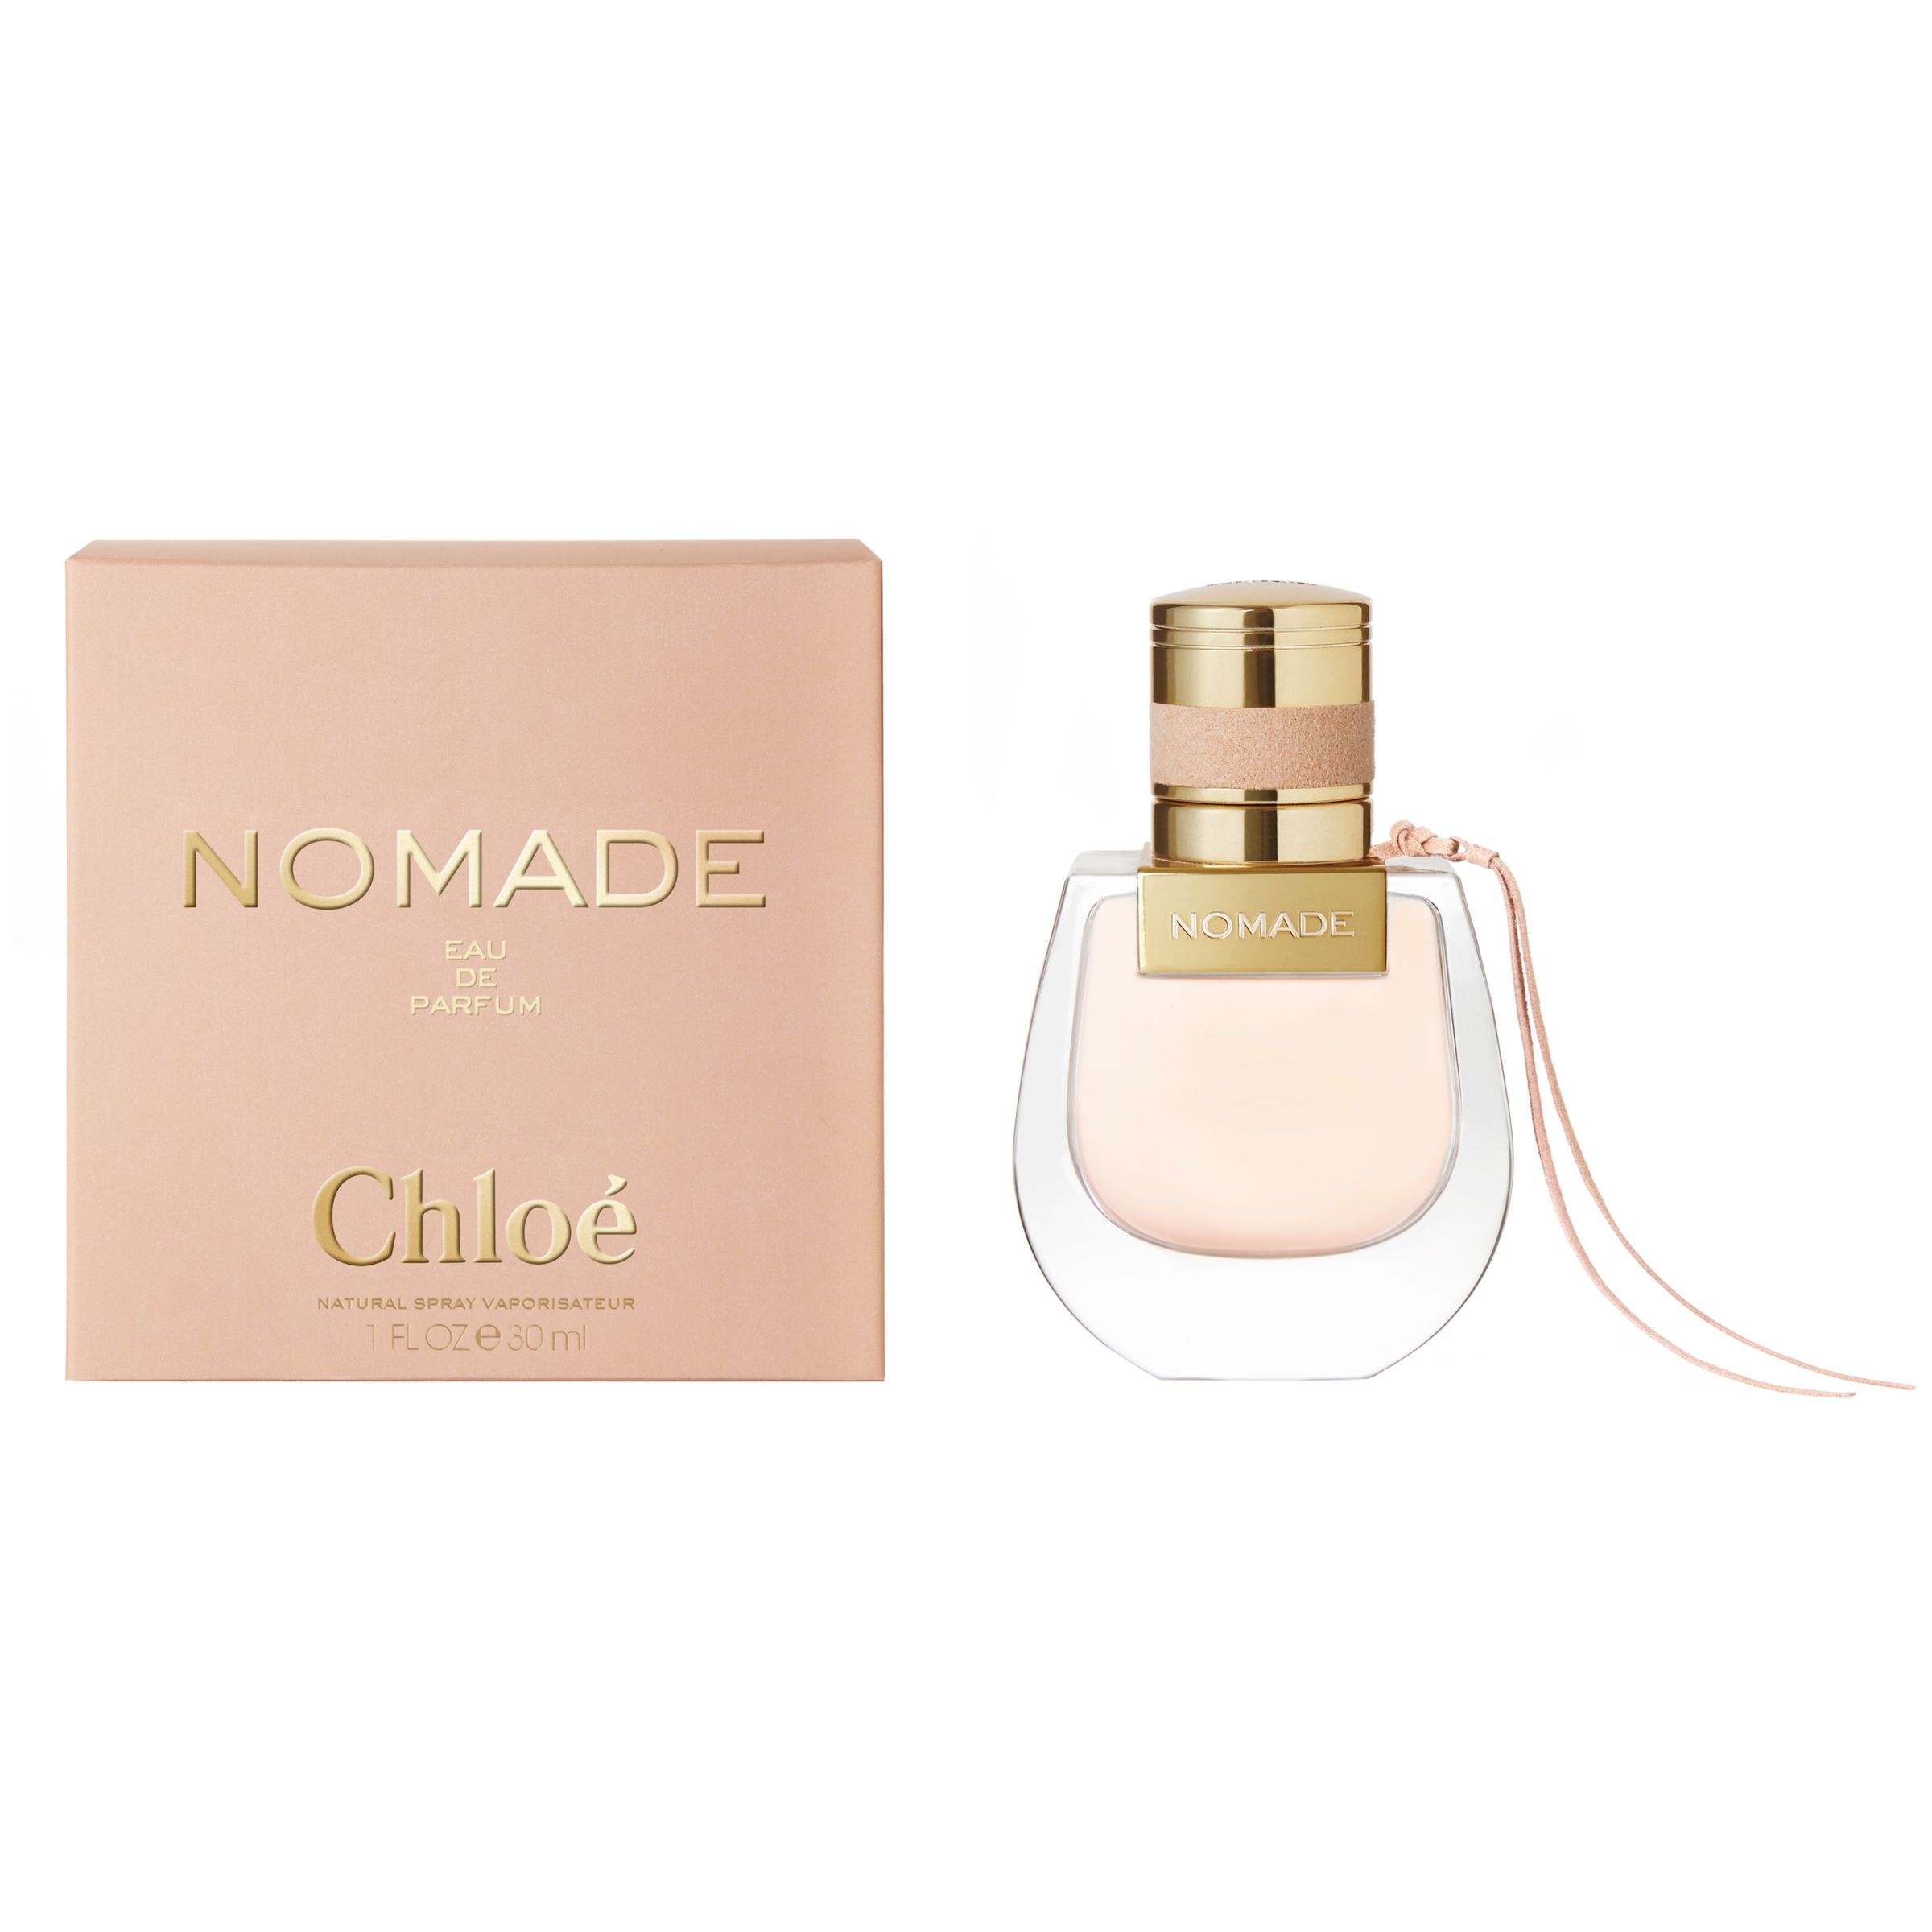 Chloé Nomade Eau de Parfum, 30ml at John Lewis & Partners